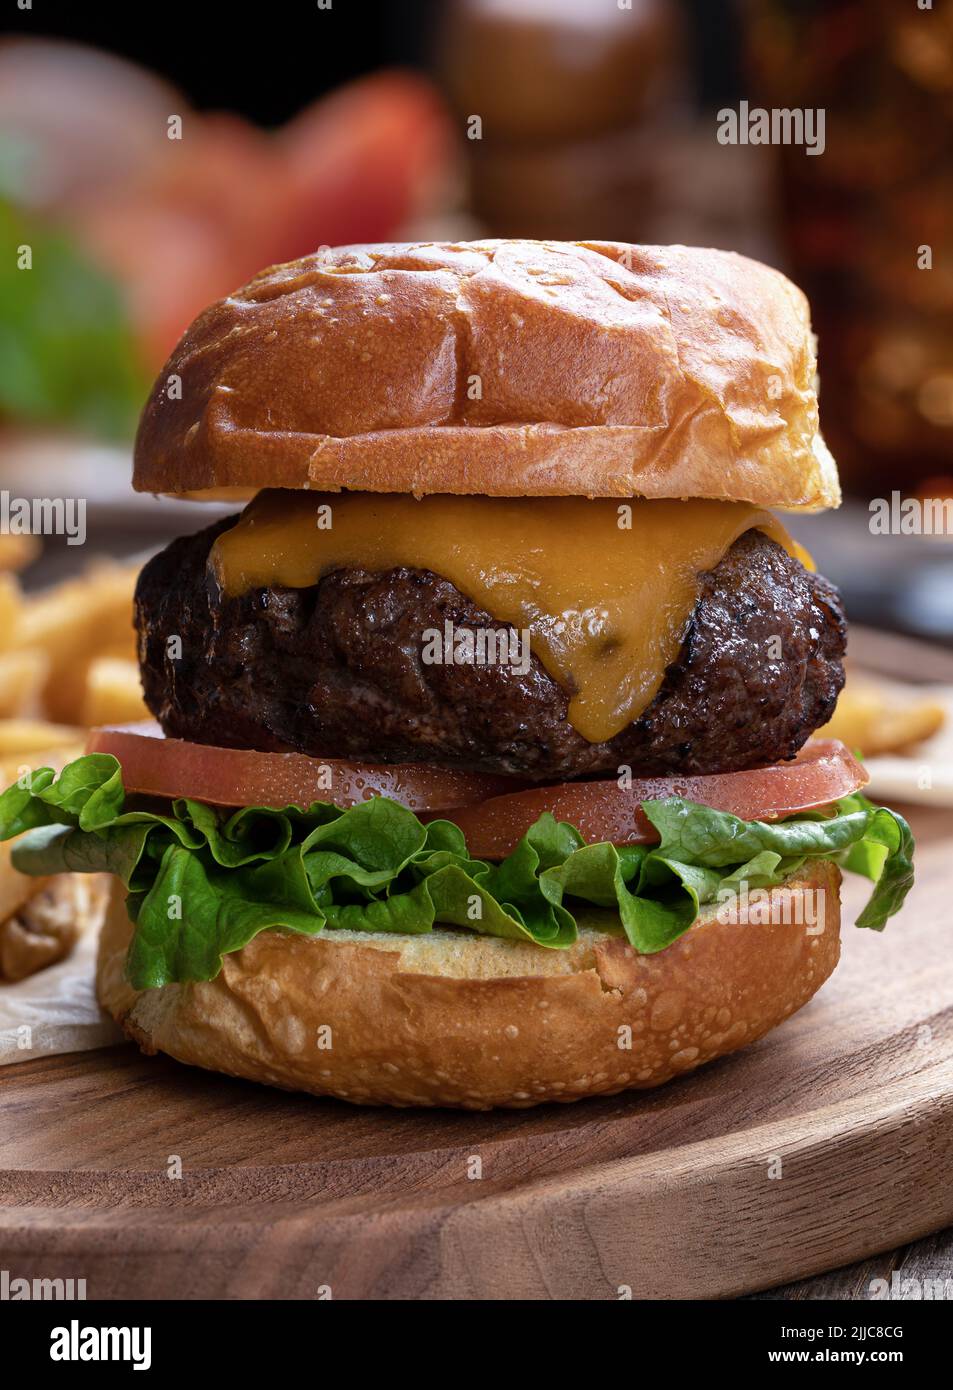 Primer plano de hamburguesa de queso con lechuga y tomate sobre una bandeja de madera Foto de stock